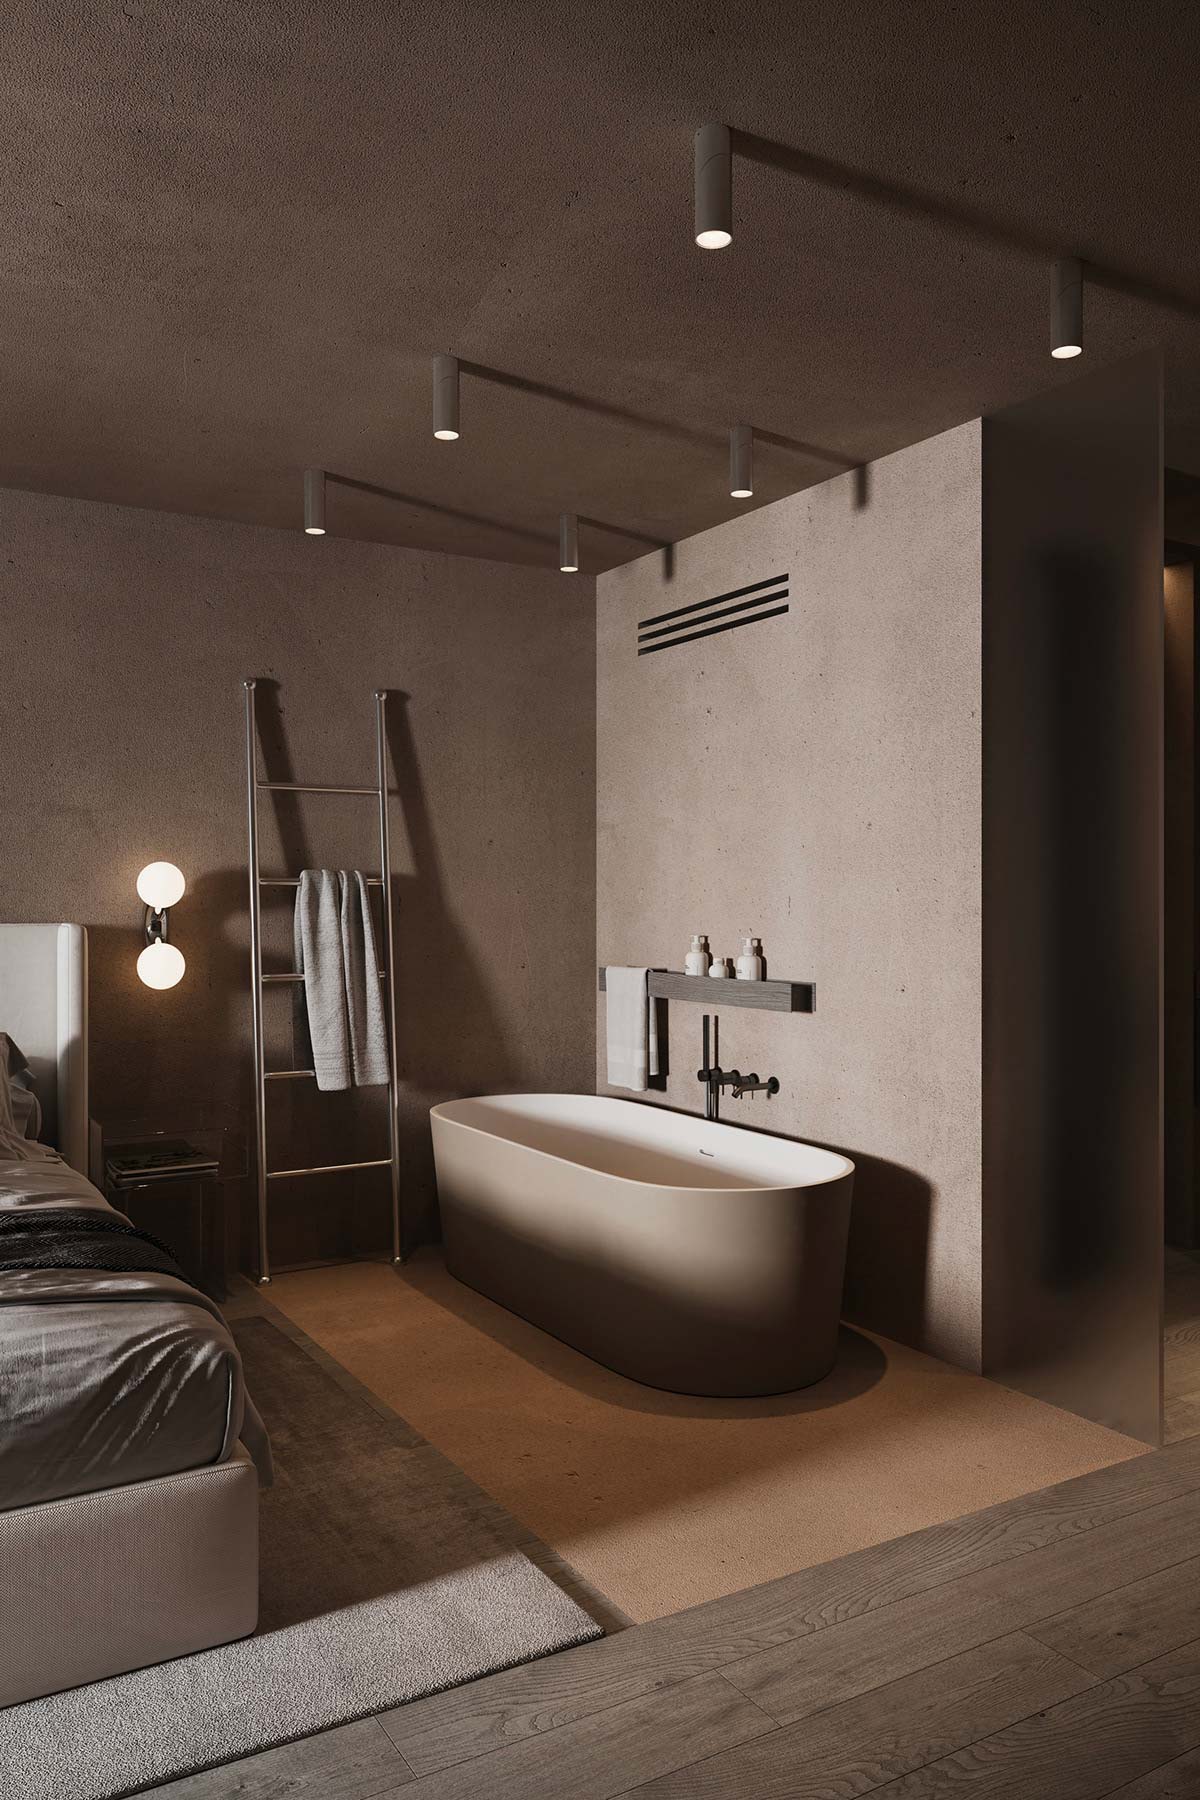 Ontwerper Anna Lutaeva heeft gekozen voor een modern vrijstaand bad in ovaal vorm met een taupe kleur die past bij de rest van de slaapkamer kleuren.